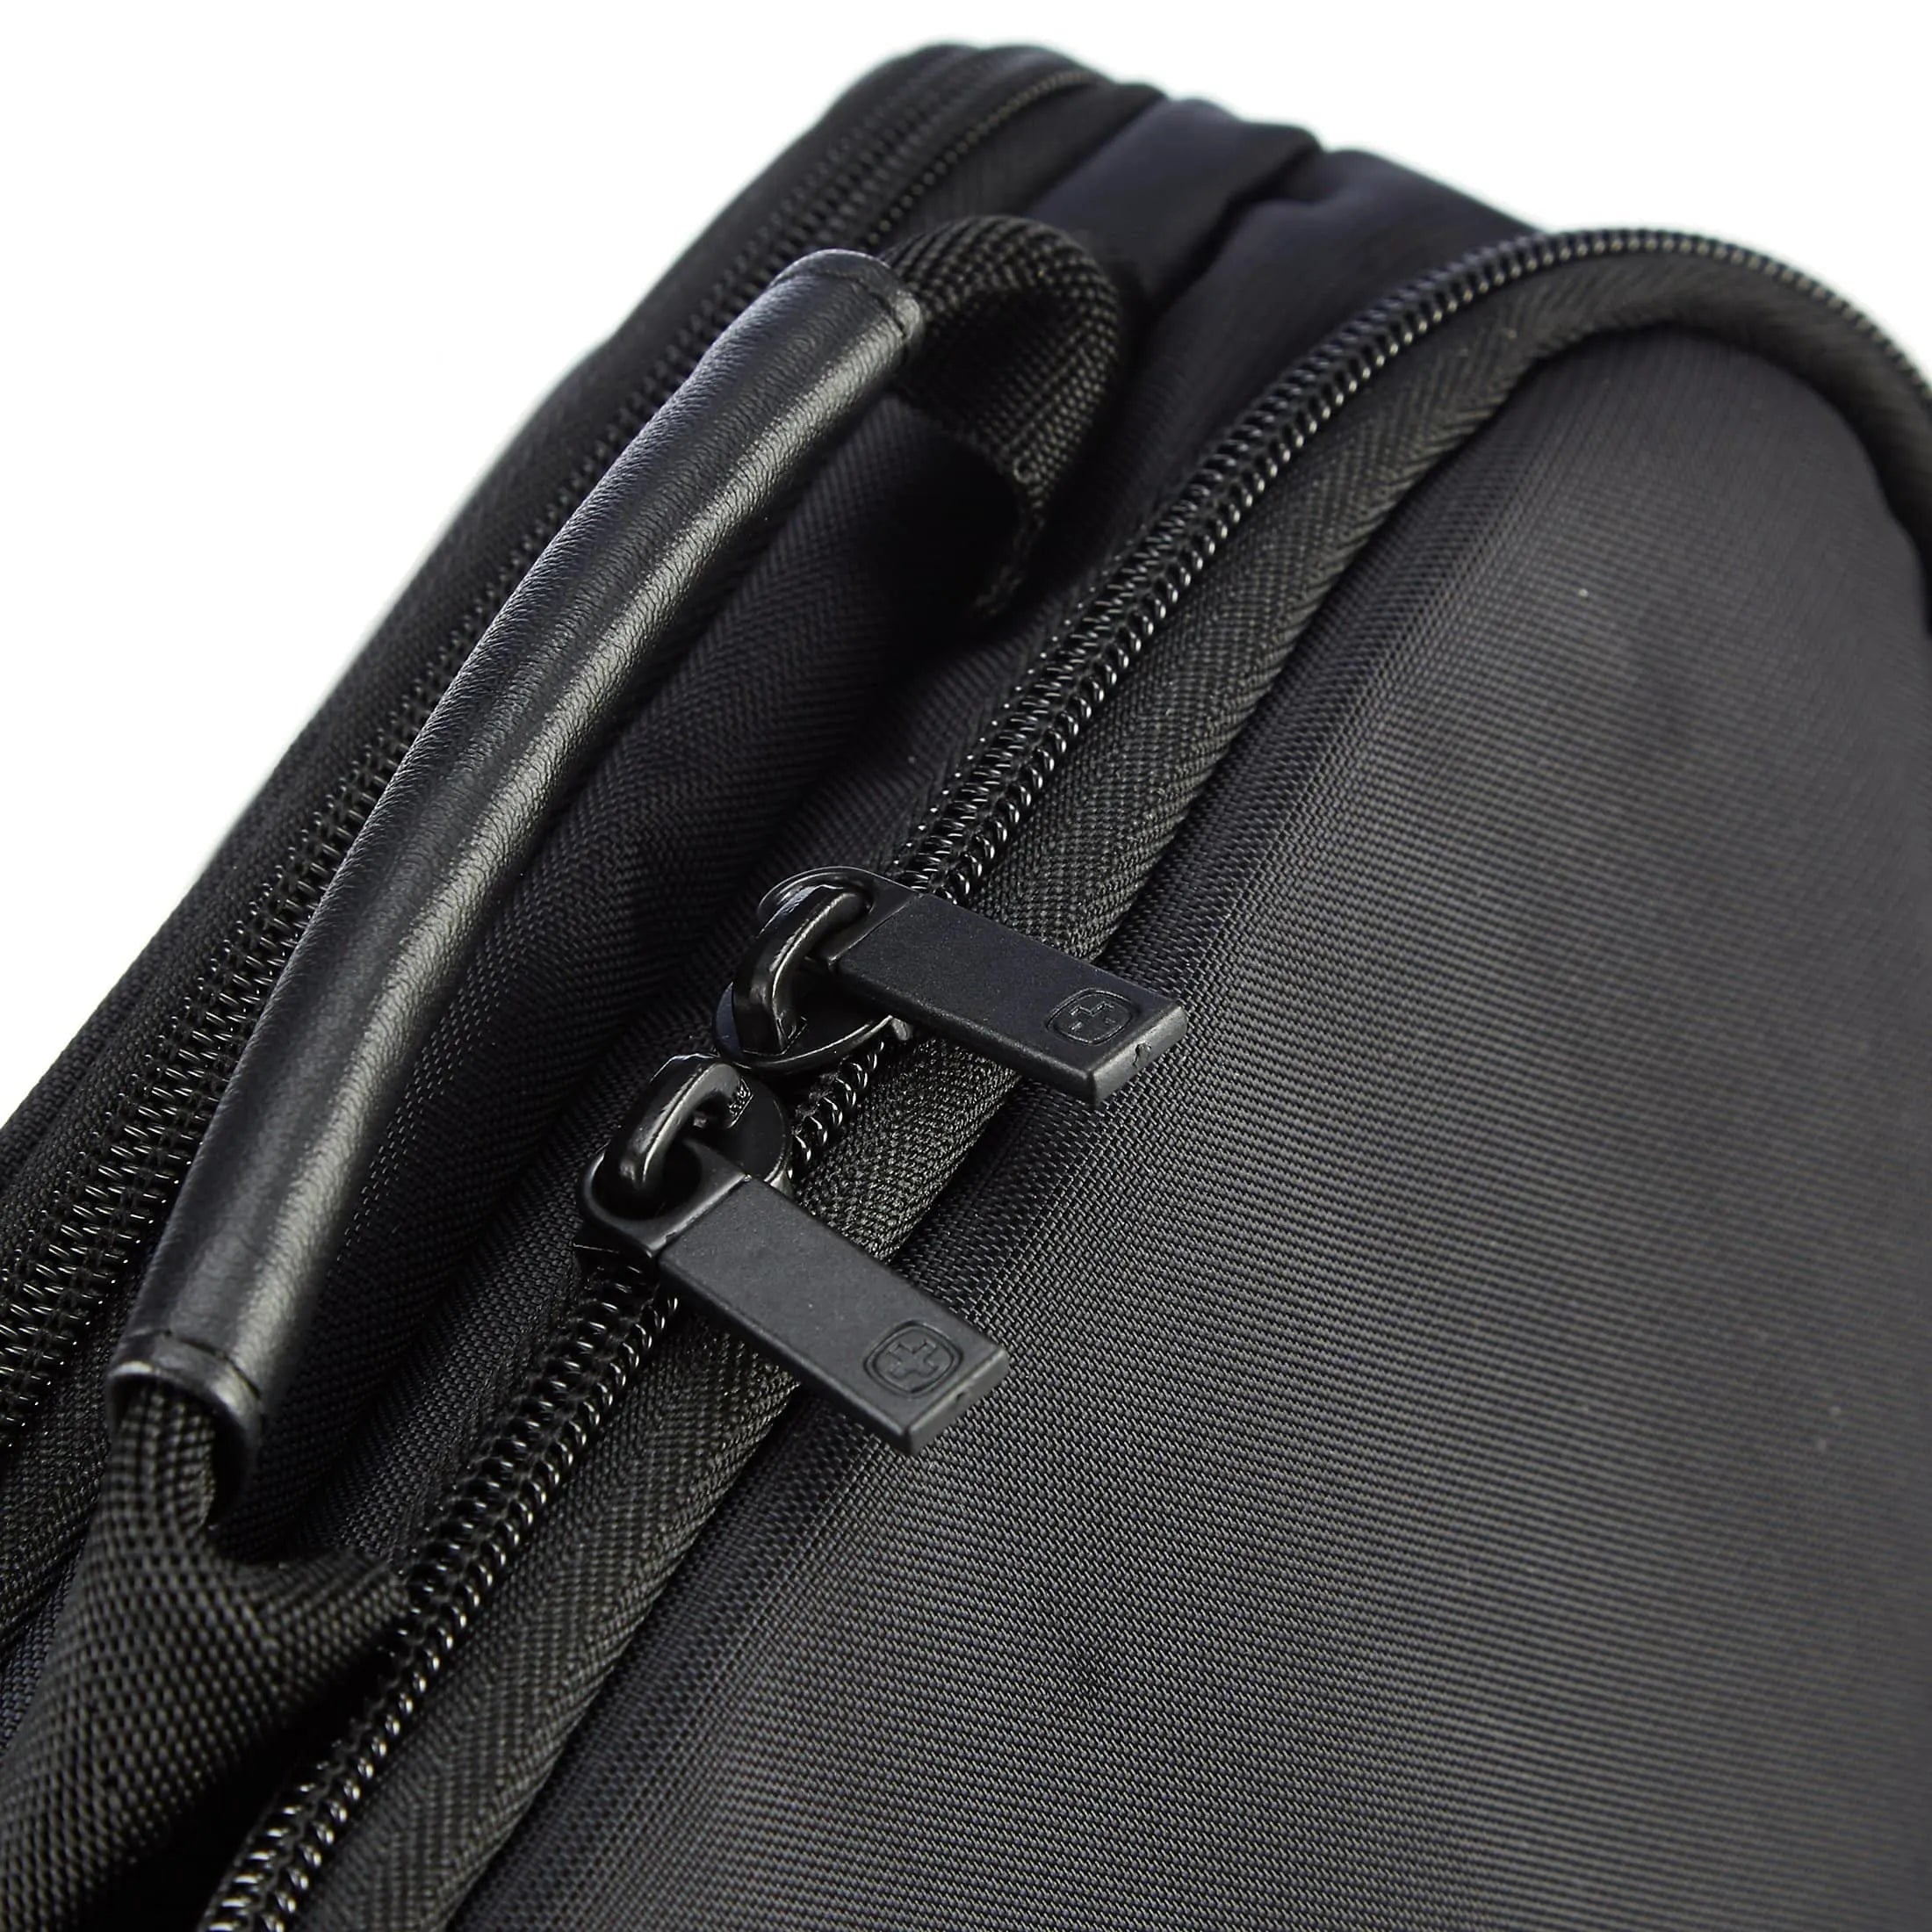 Wenger Business Reload 14 backpack 42 cm - black